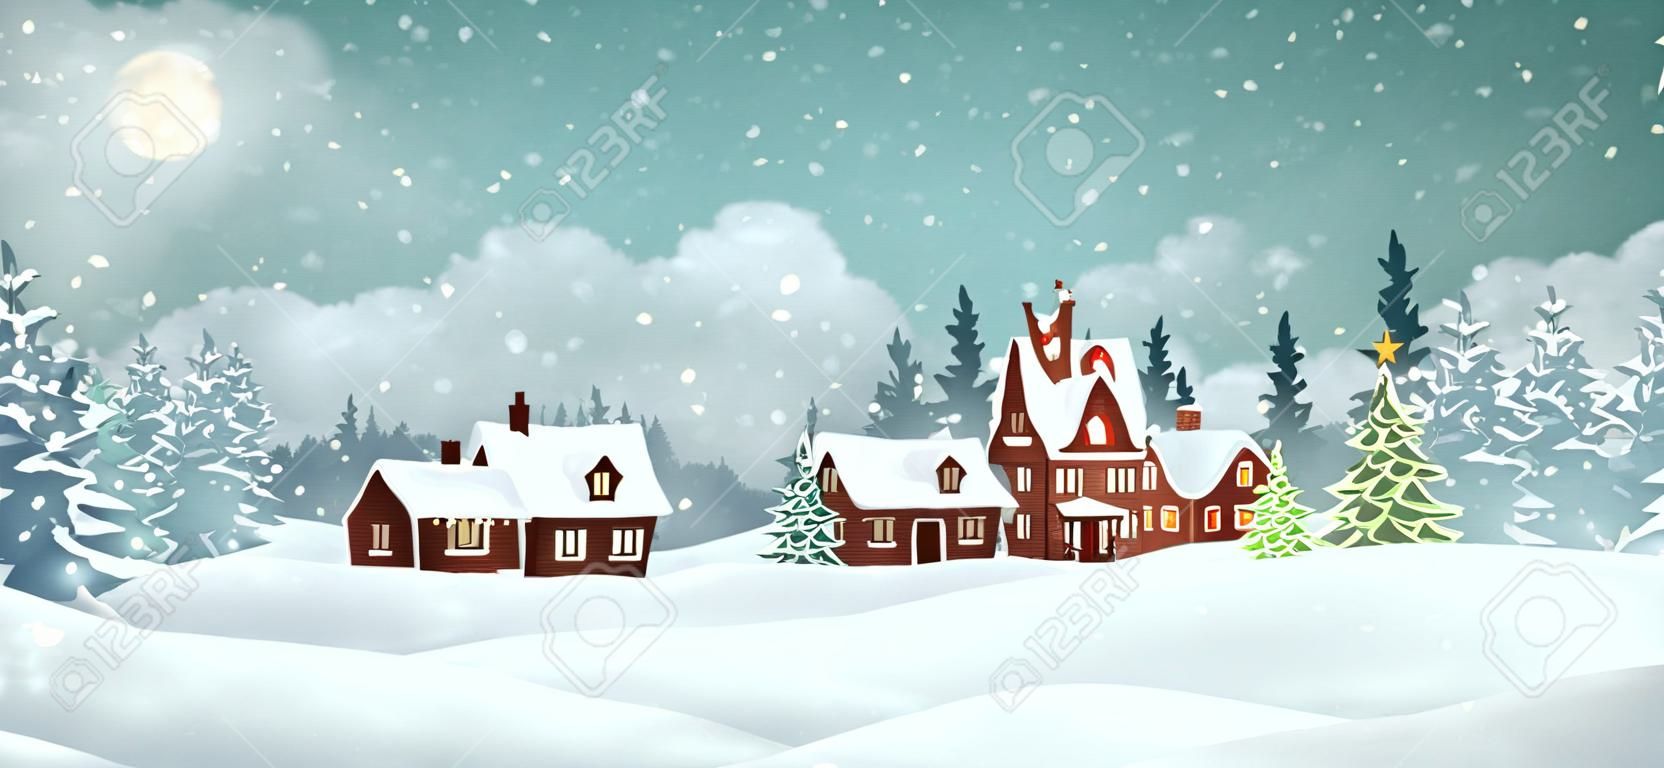 Kerstdorp huizen met winter pijnboom bos. Kerstvakantie vector illustratie